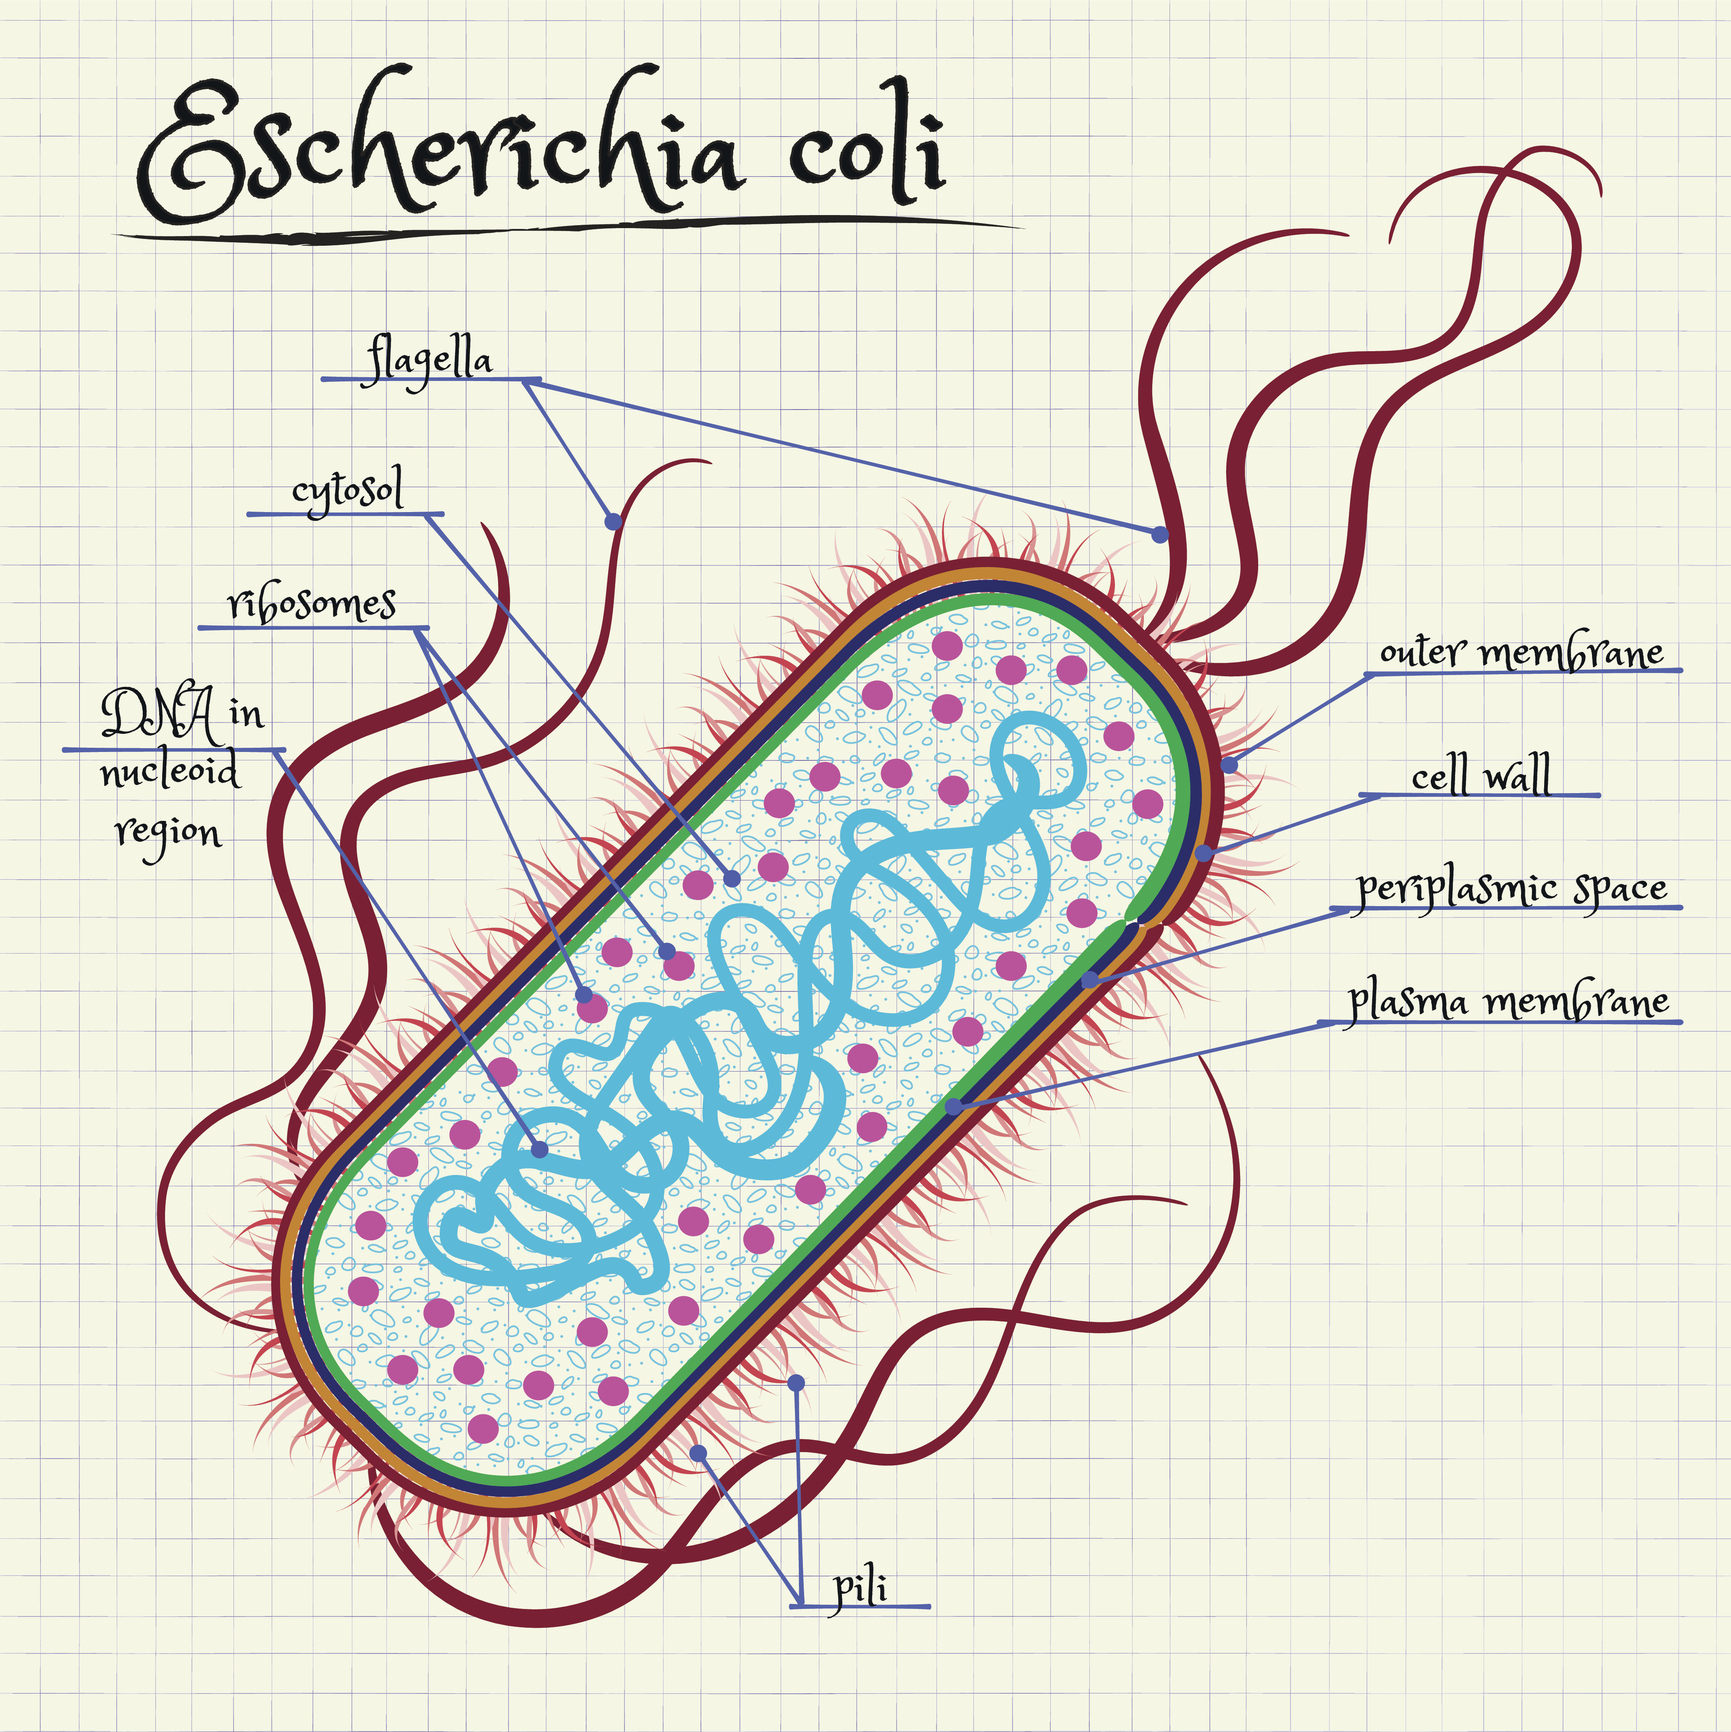 the structure of Escherichia coli - GE Reports